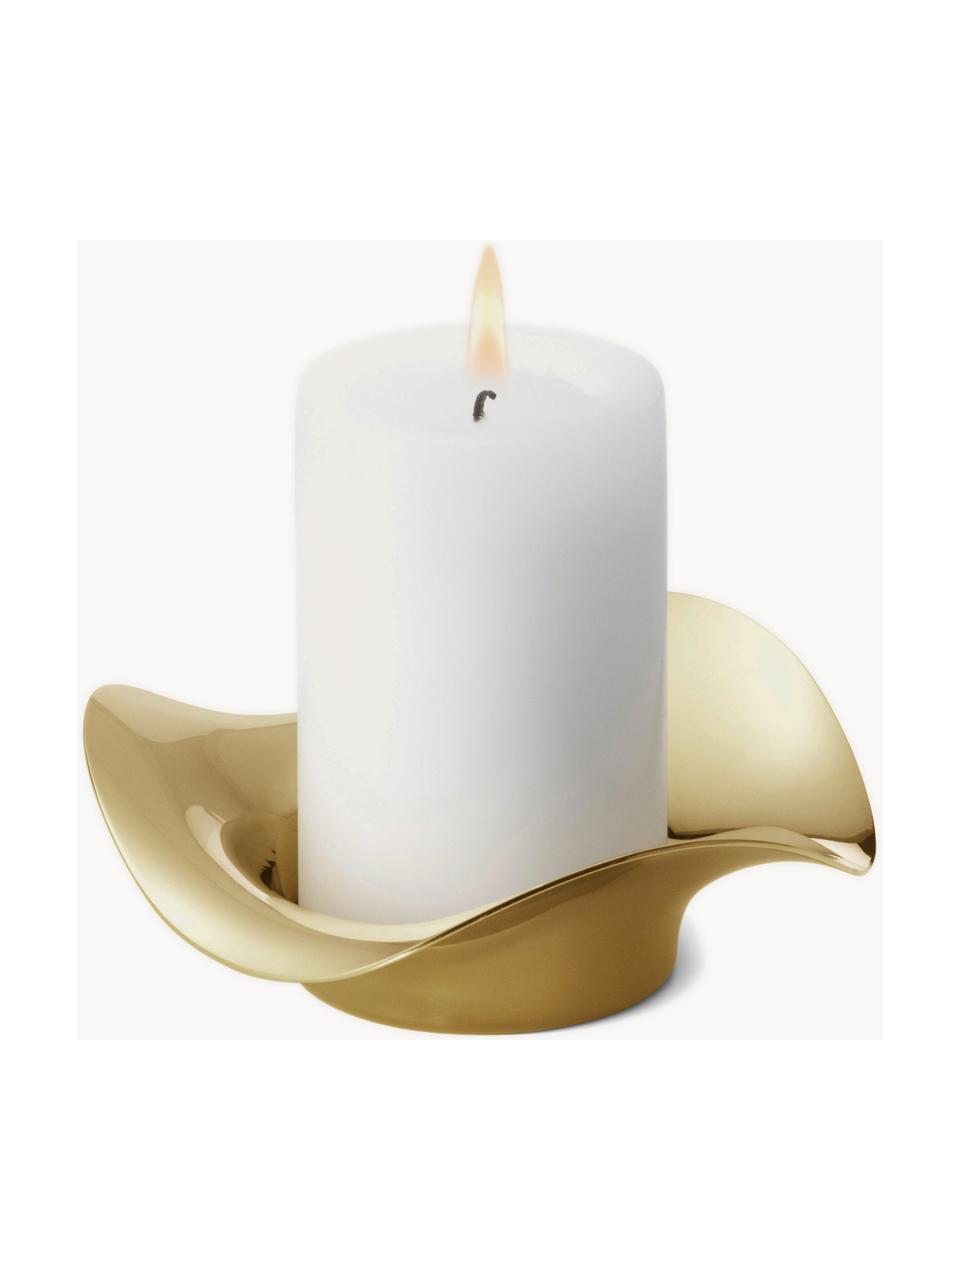 Edelstahl-Kerzenhalter Cobra in organischer Form, Edelstahl, beschichtet, Goldfarben, hochglanzpoliert, Ø 13 x H 4 cm